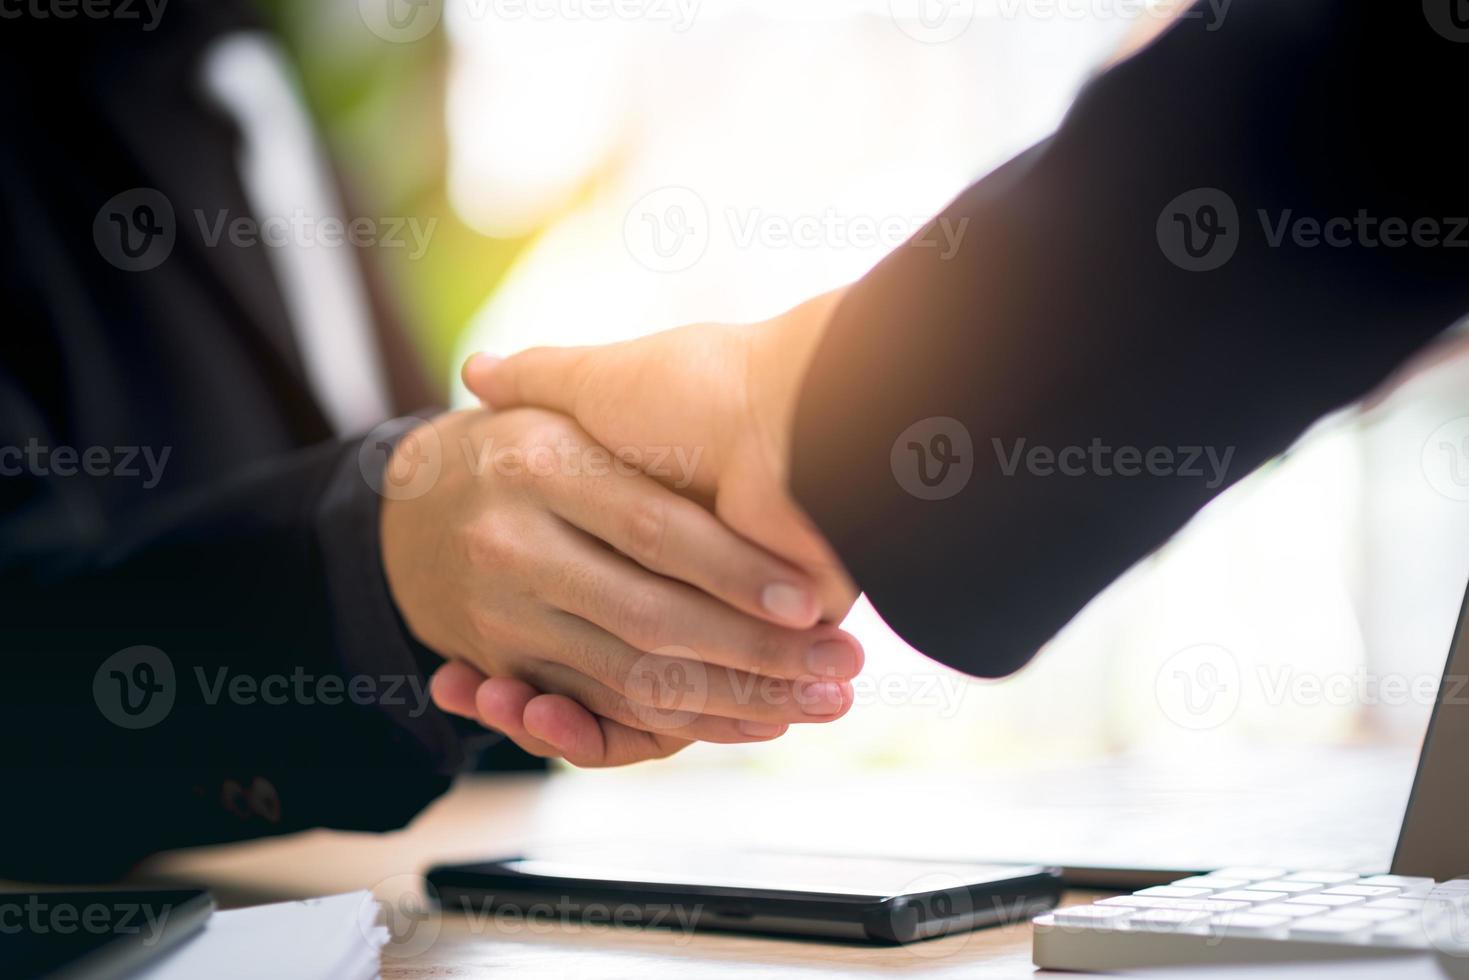 hommes d'affaires se serrant la main pour indiquer un accord commercial, gestion réussie des contrats de l'entreprise, signature d'un accord, partenaire commercial, nouvelles opportunités pour l'avenir de l'industrie, coentreprise photo